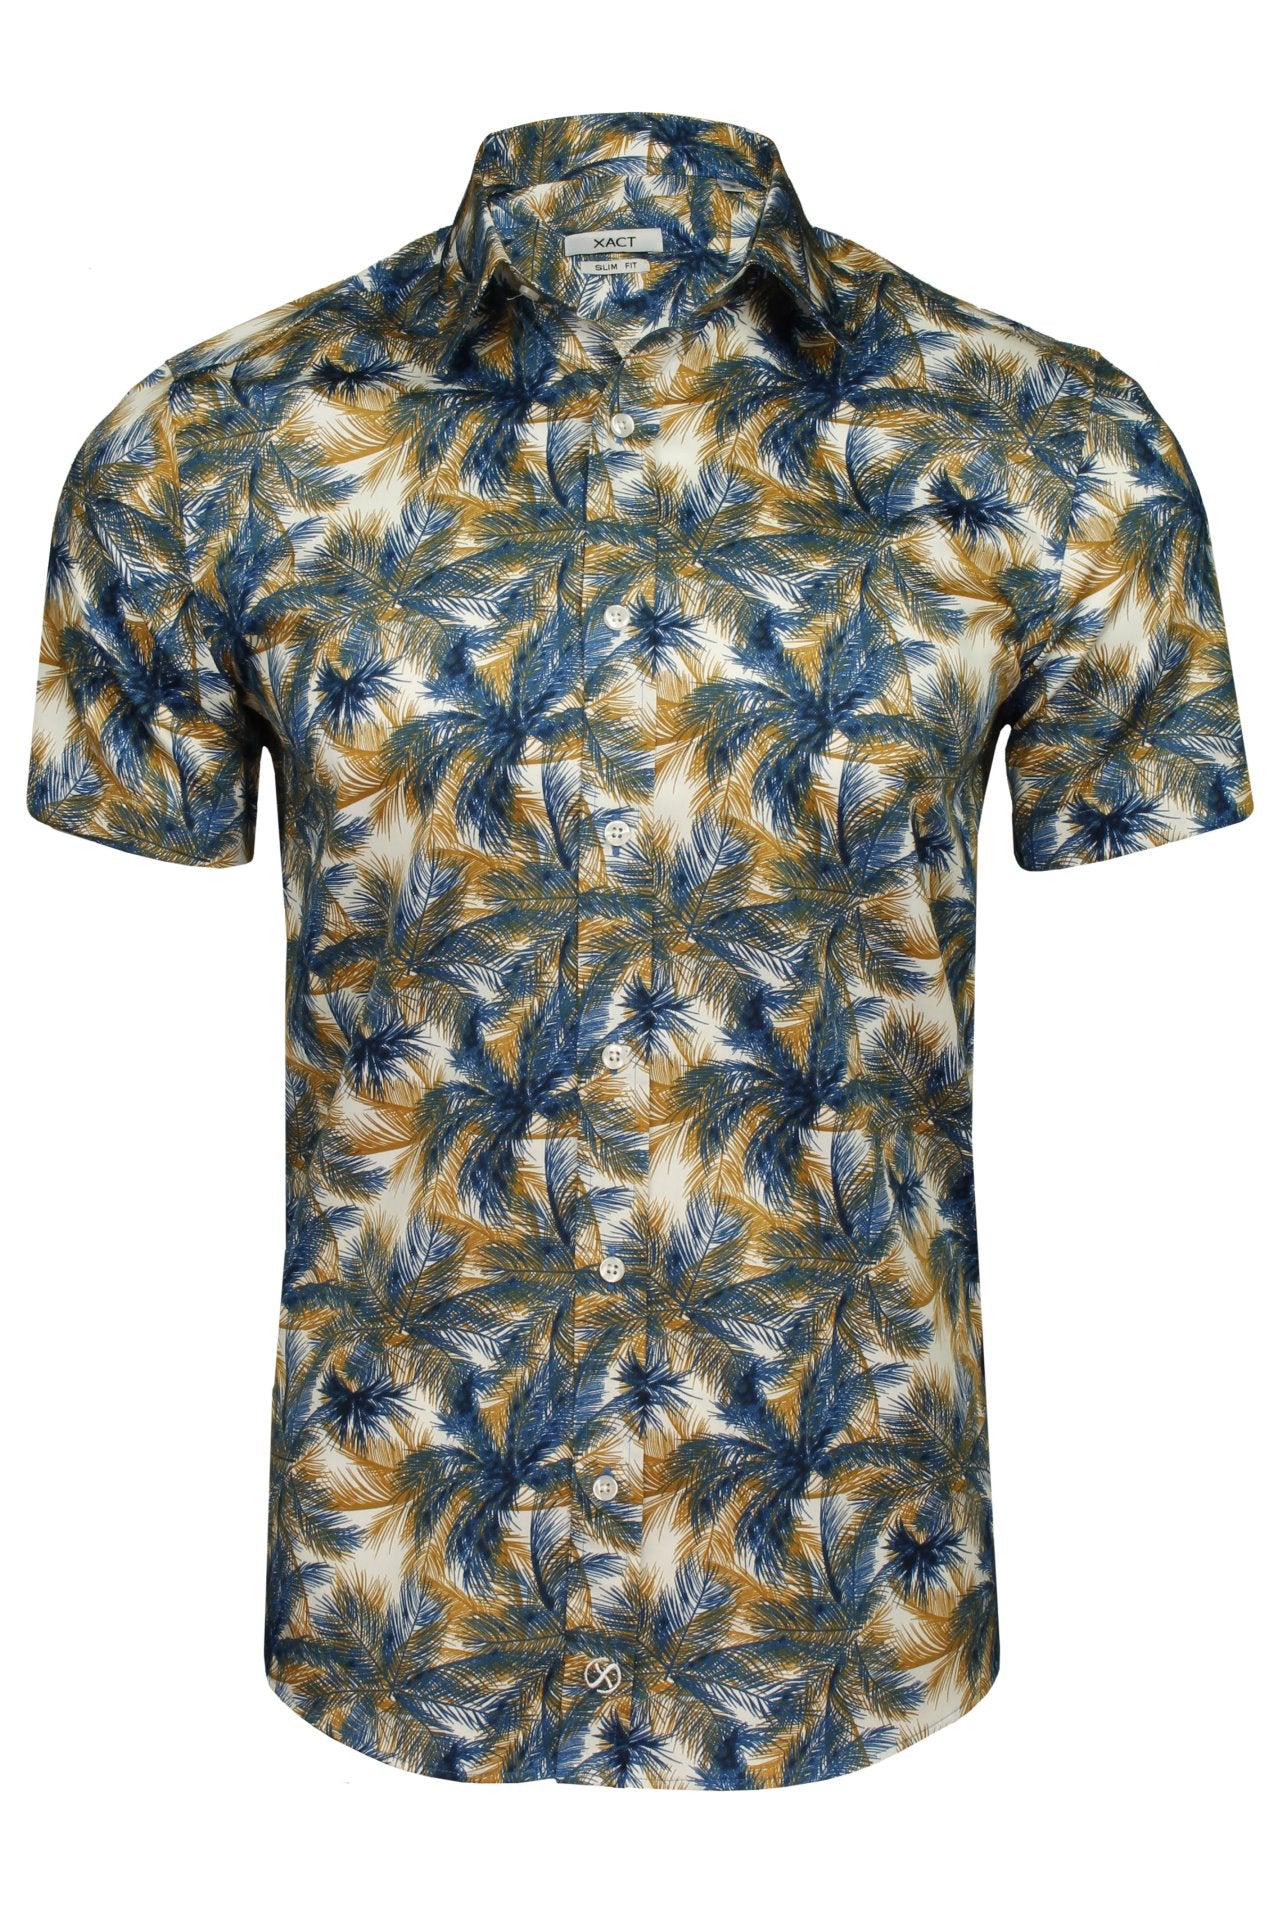 Xact Mens 100% Cotton Short Sleeved Hawaiian/ Floral Shirt-Main Image